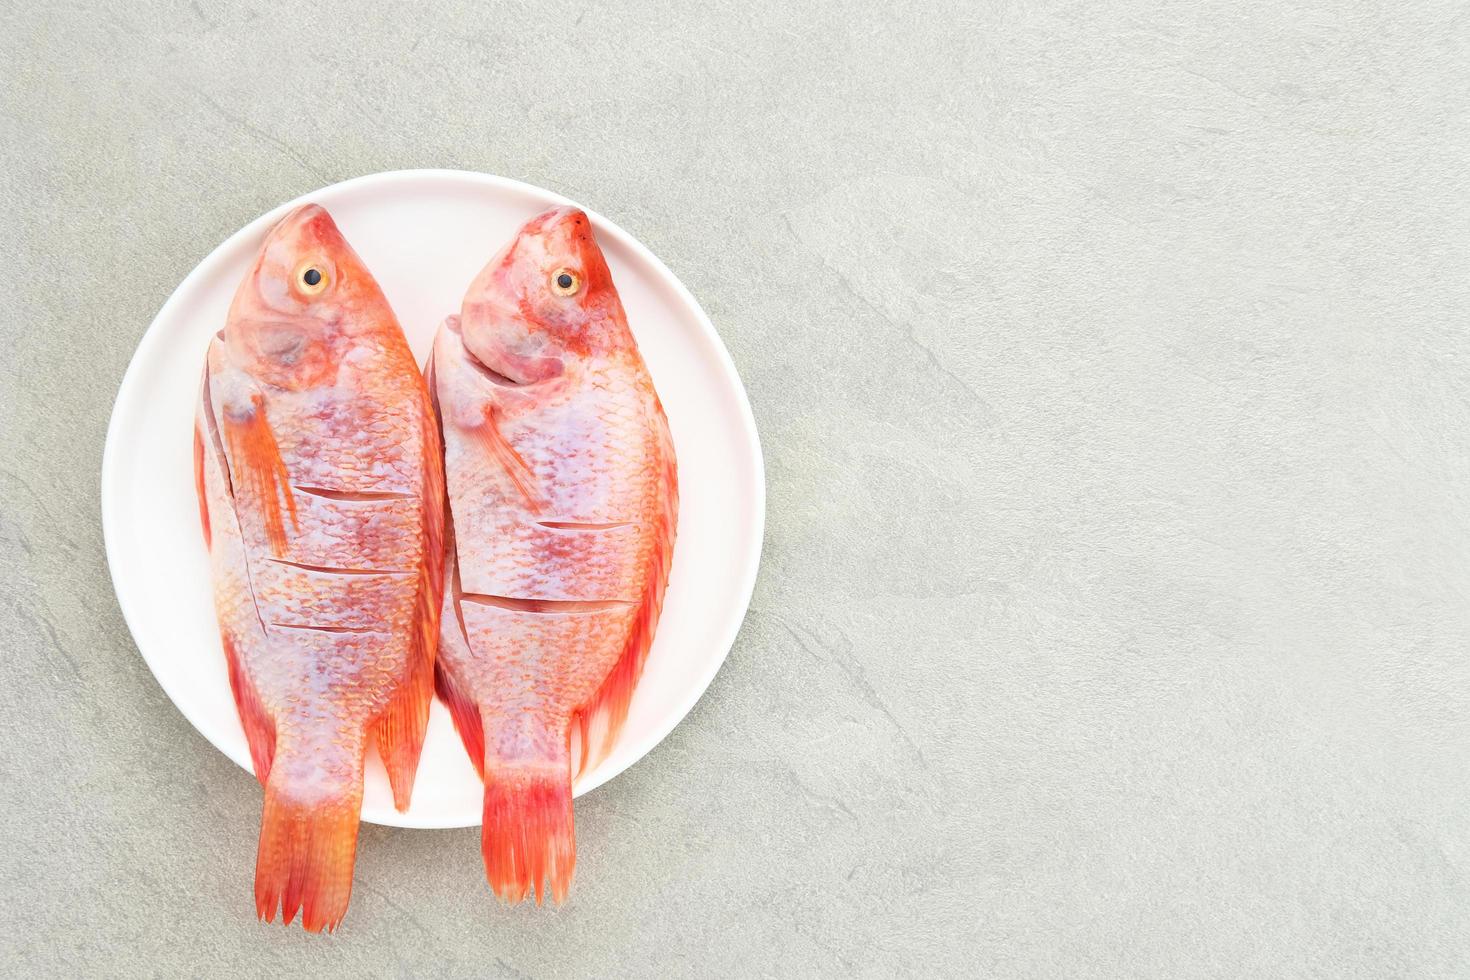 peixe tilápia vermelho cru é um tipo de consumo de peixe de água doce, servido na chapa branca com especiarias e limão. foco selecionado foto